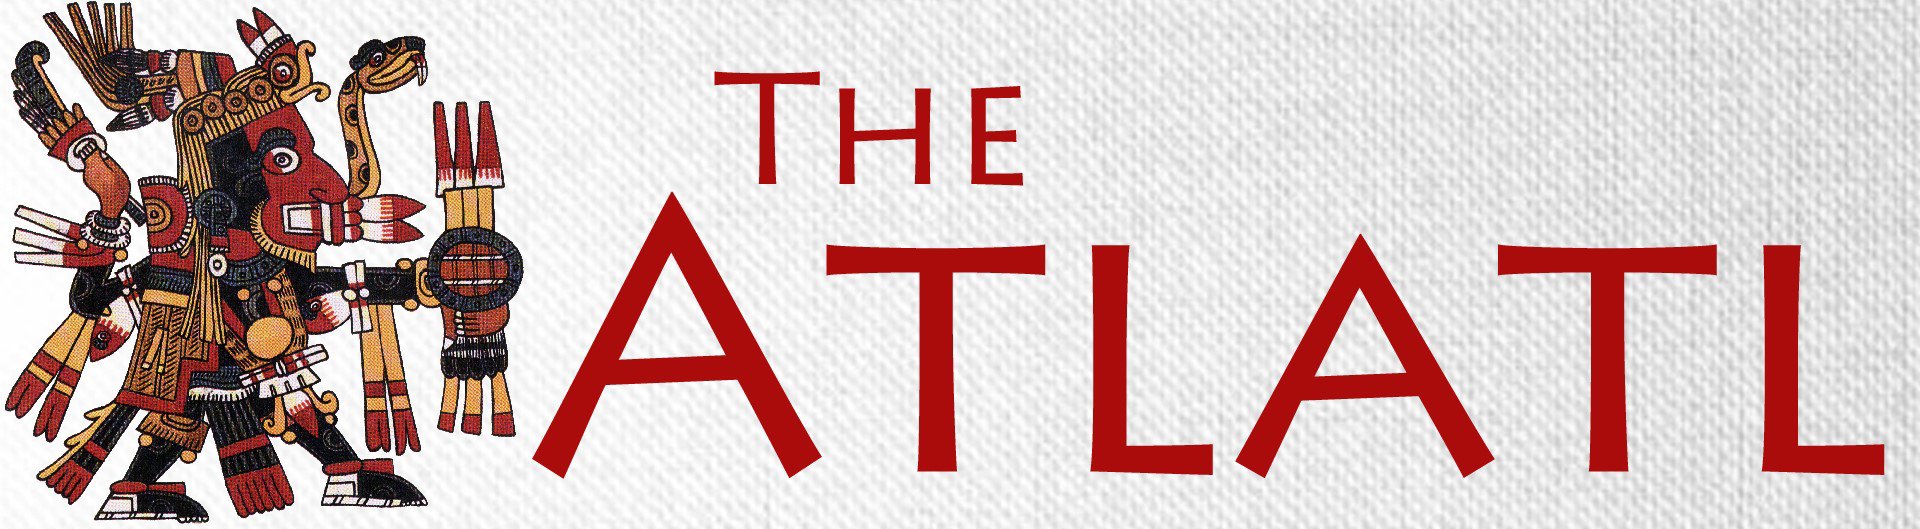 The Atlatl - Newsletter for the World Atlatl Association